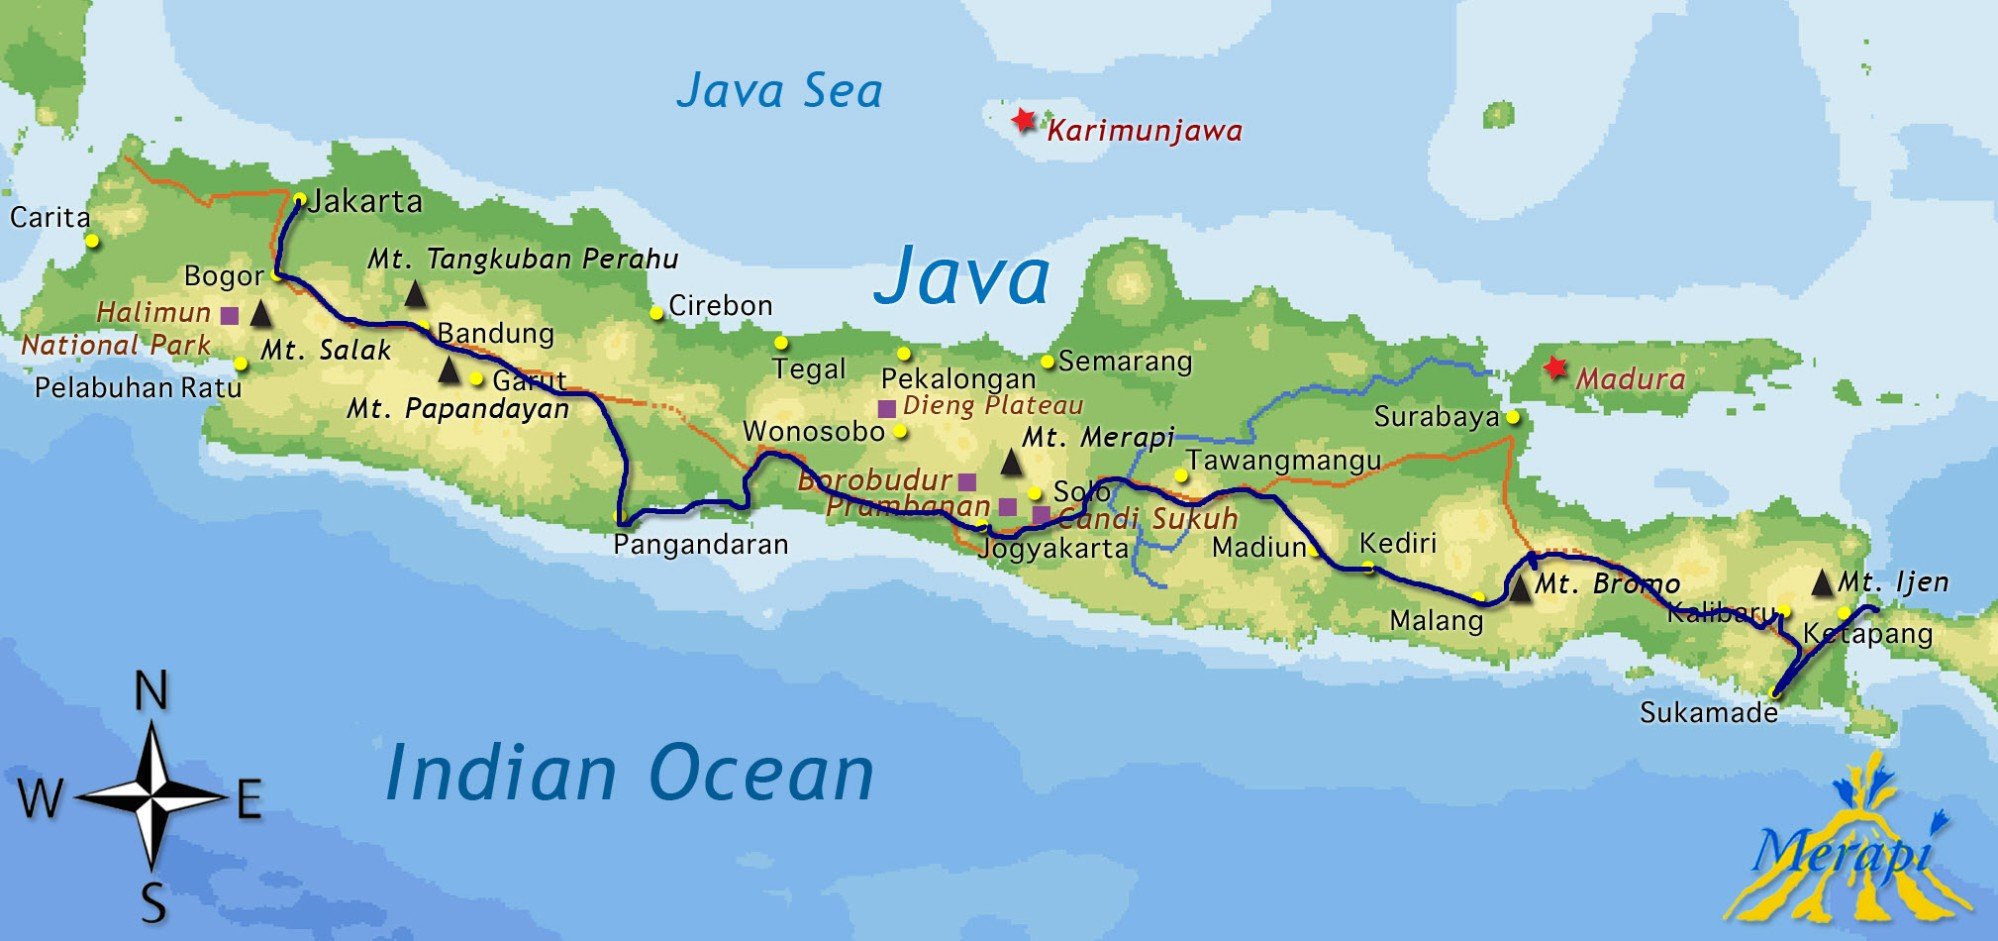 201402272229100.Map Java Algemeen 1437484450 